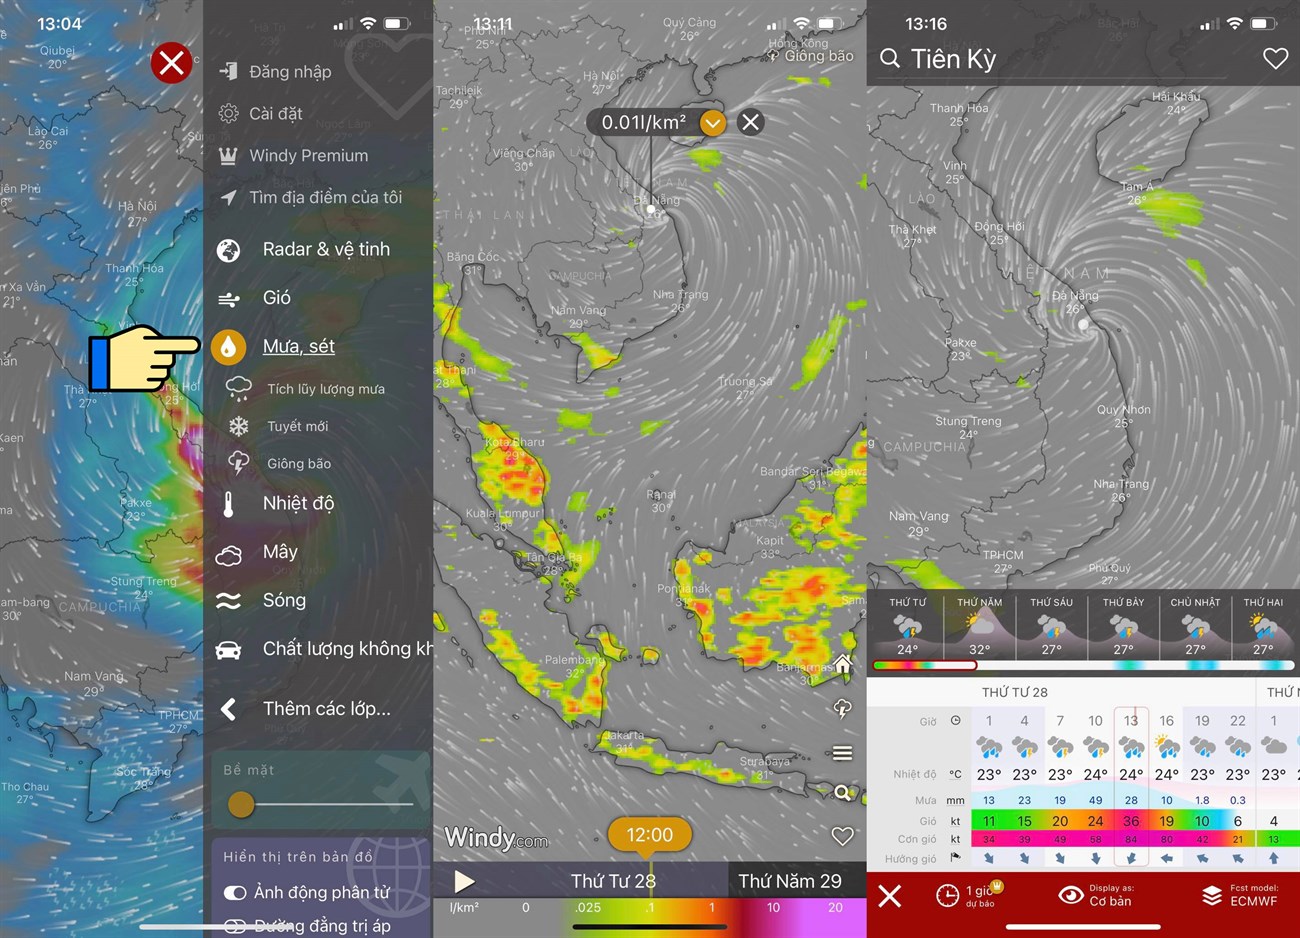 Cách xem bản đồ dự báo thời tiết, bão lũ, thiên tai Việt Nam trực tiếp qua vệ tinh > Theo dõi tình hình giông bão trên bản đồ